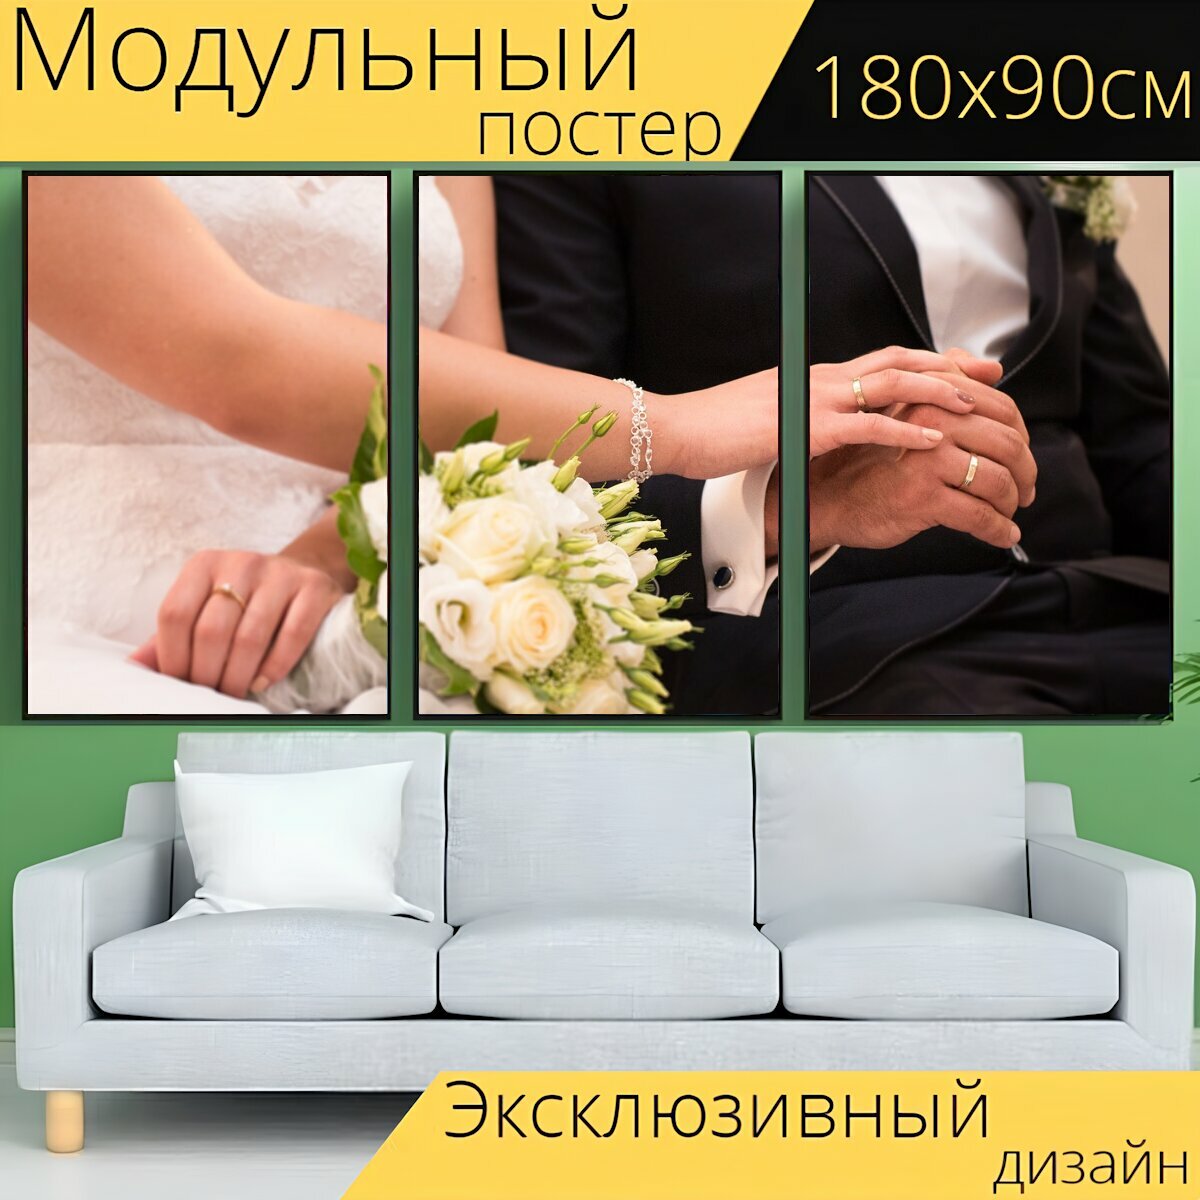 Модульный постер "Свадьба, свадебные кольца, клятва" 180 x 90 см. для интерьера